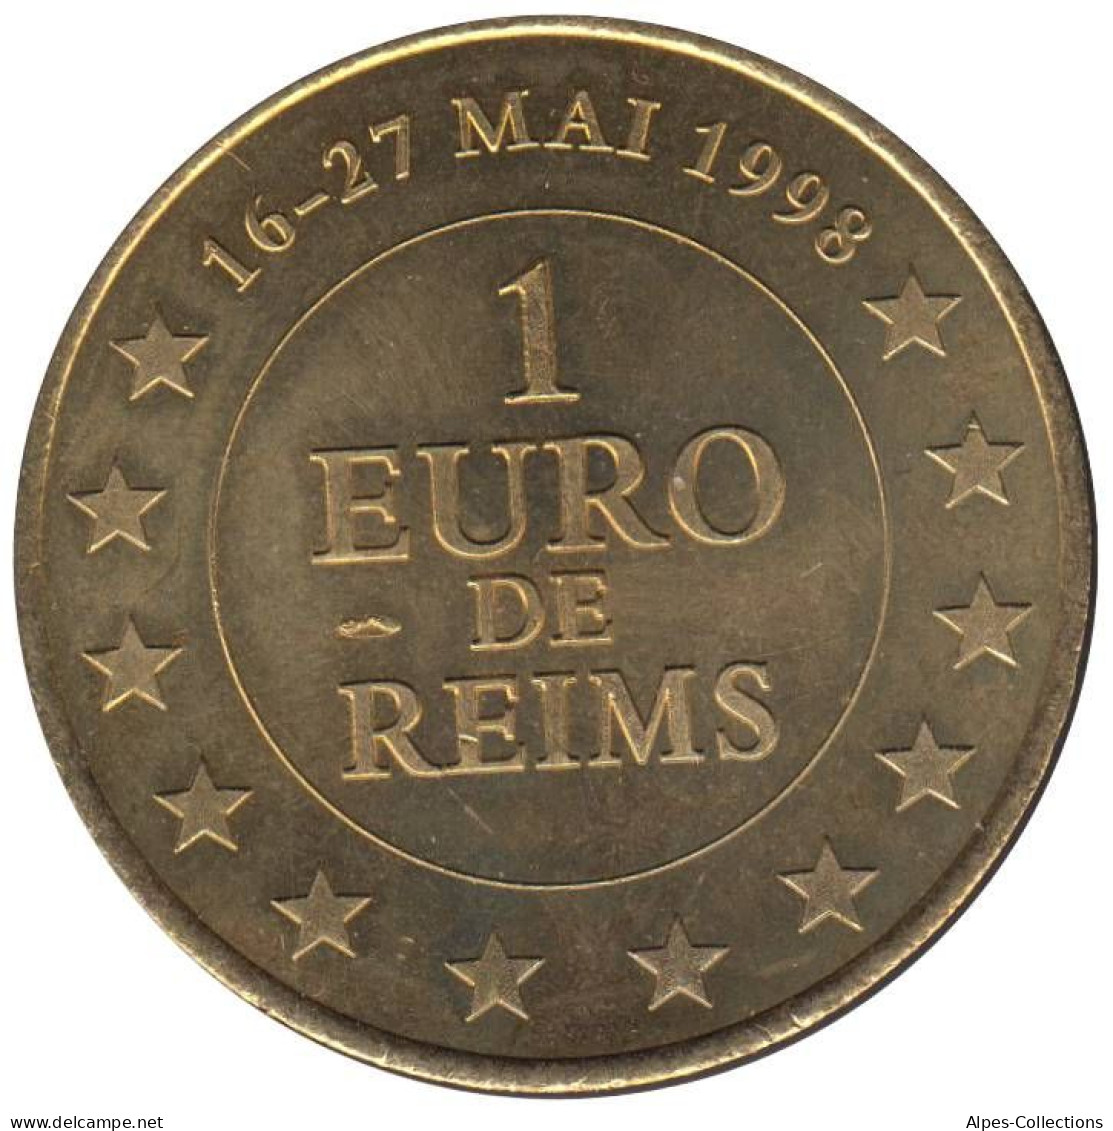 REIMS - EU0010.1 - 1 EURO DES VILLES -  Réf: T545 - 1998 - Euros Des Villes